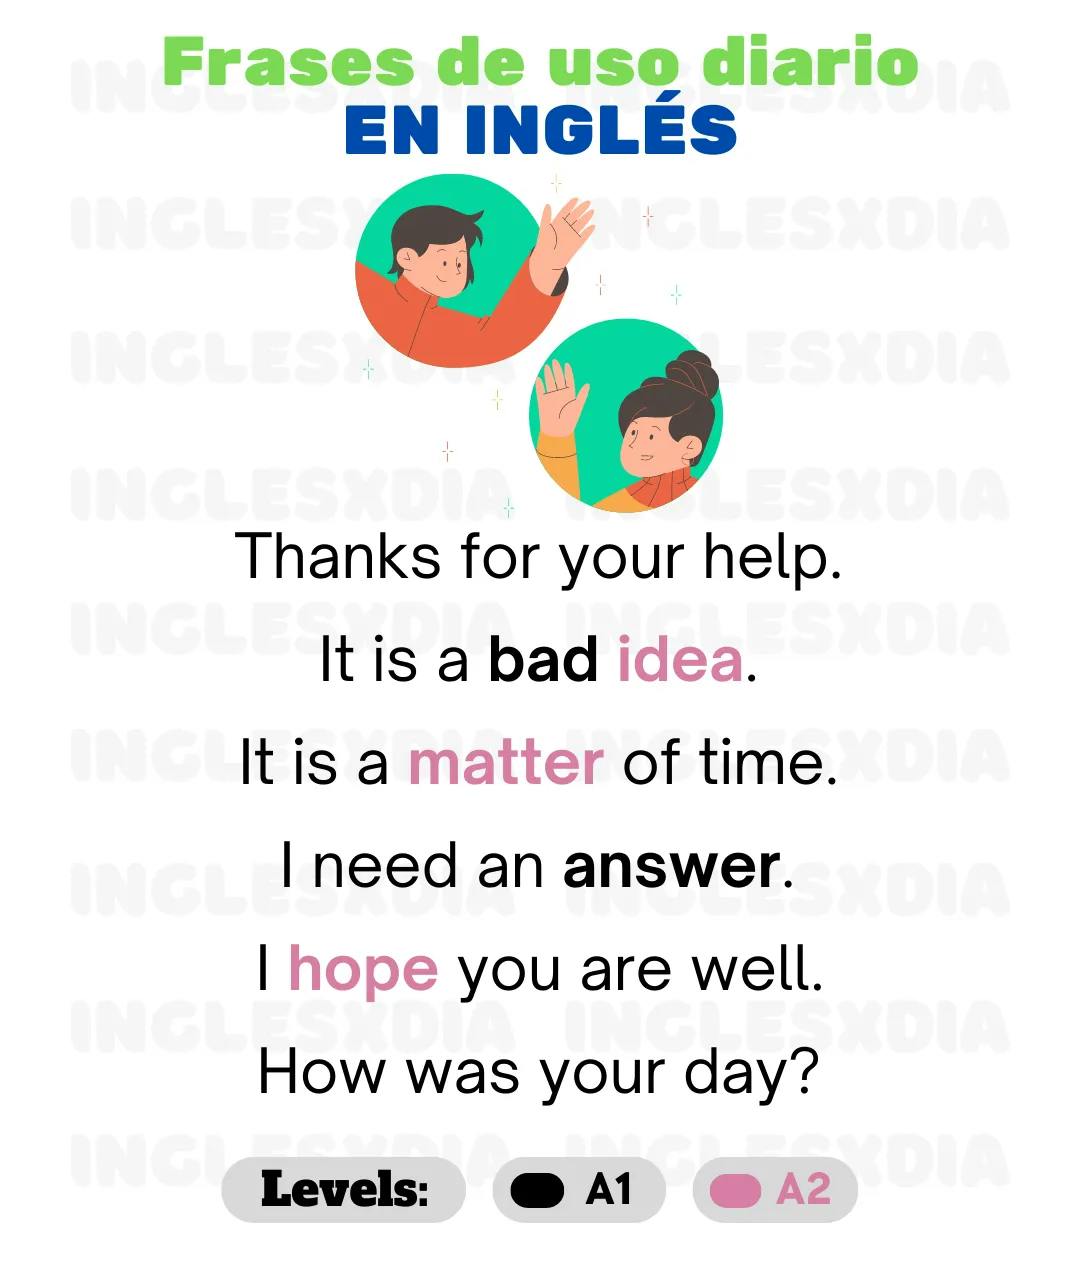 Curso de inglés en línea: frases en inglés de uso diario · Thanks for your help ...